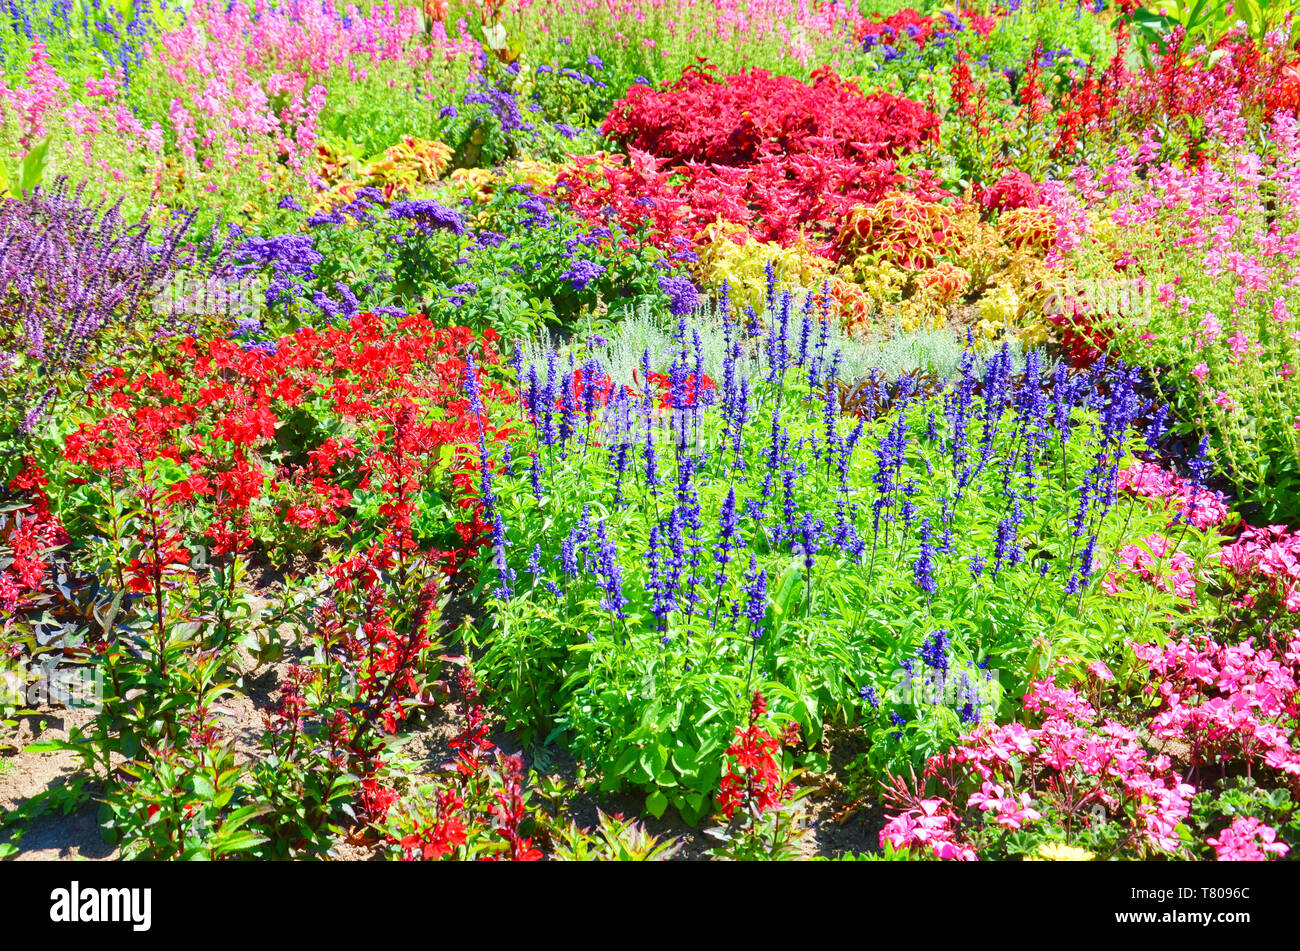 De belles fleurs aux couleurs vives à dominante rouge, rose et violet couleurs prises pendant la saison du printemps. Dans ce magnifique lit de fleurs nous pouvons trouver de nombreuses espèces différentes. Banque D'Images